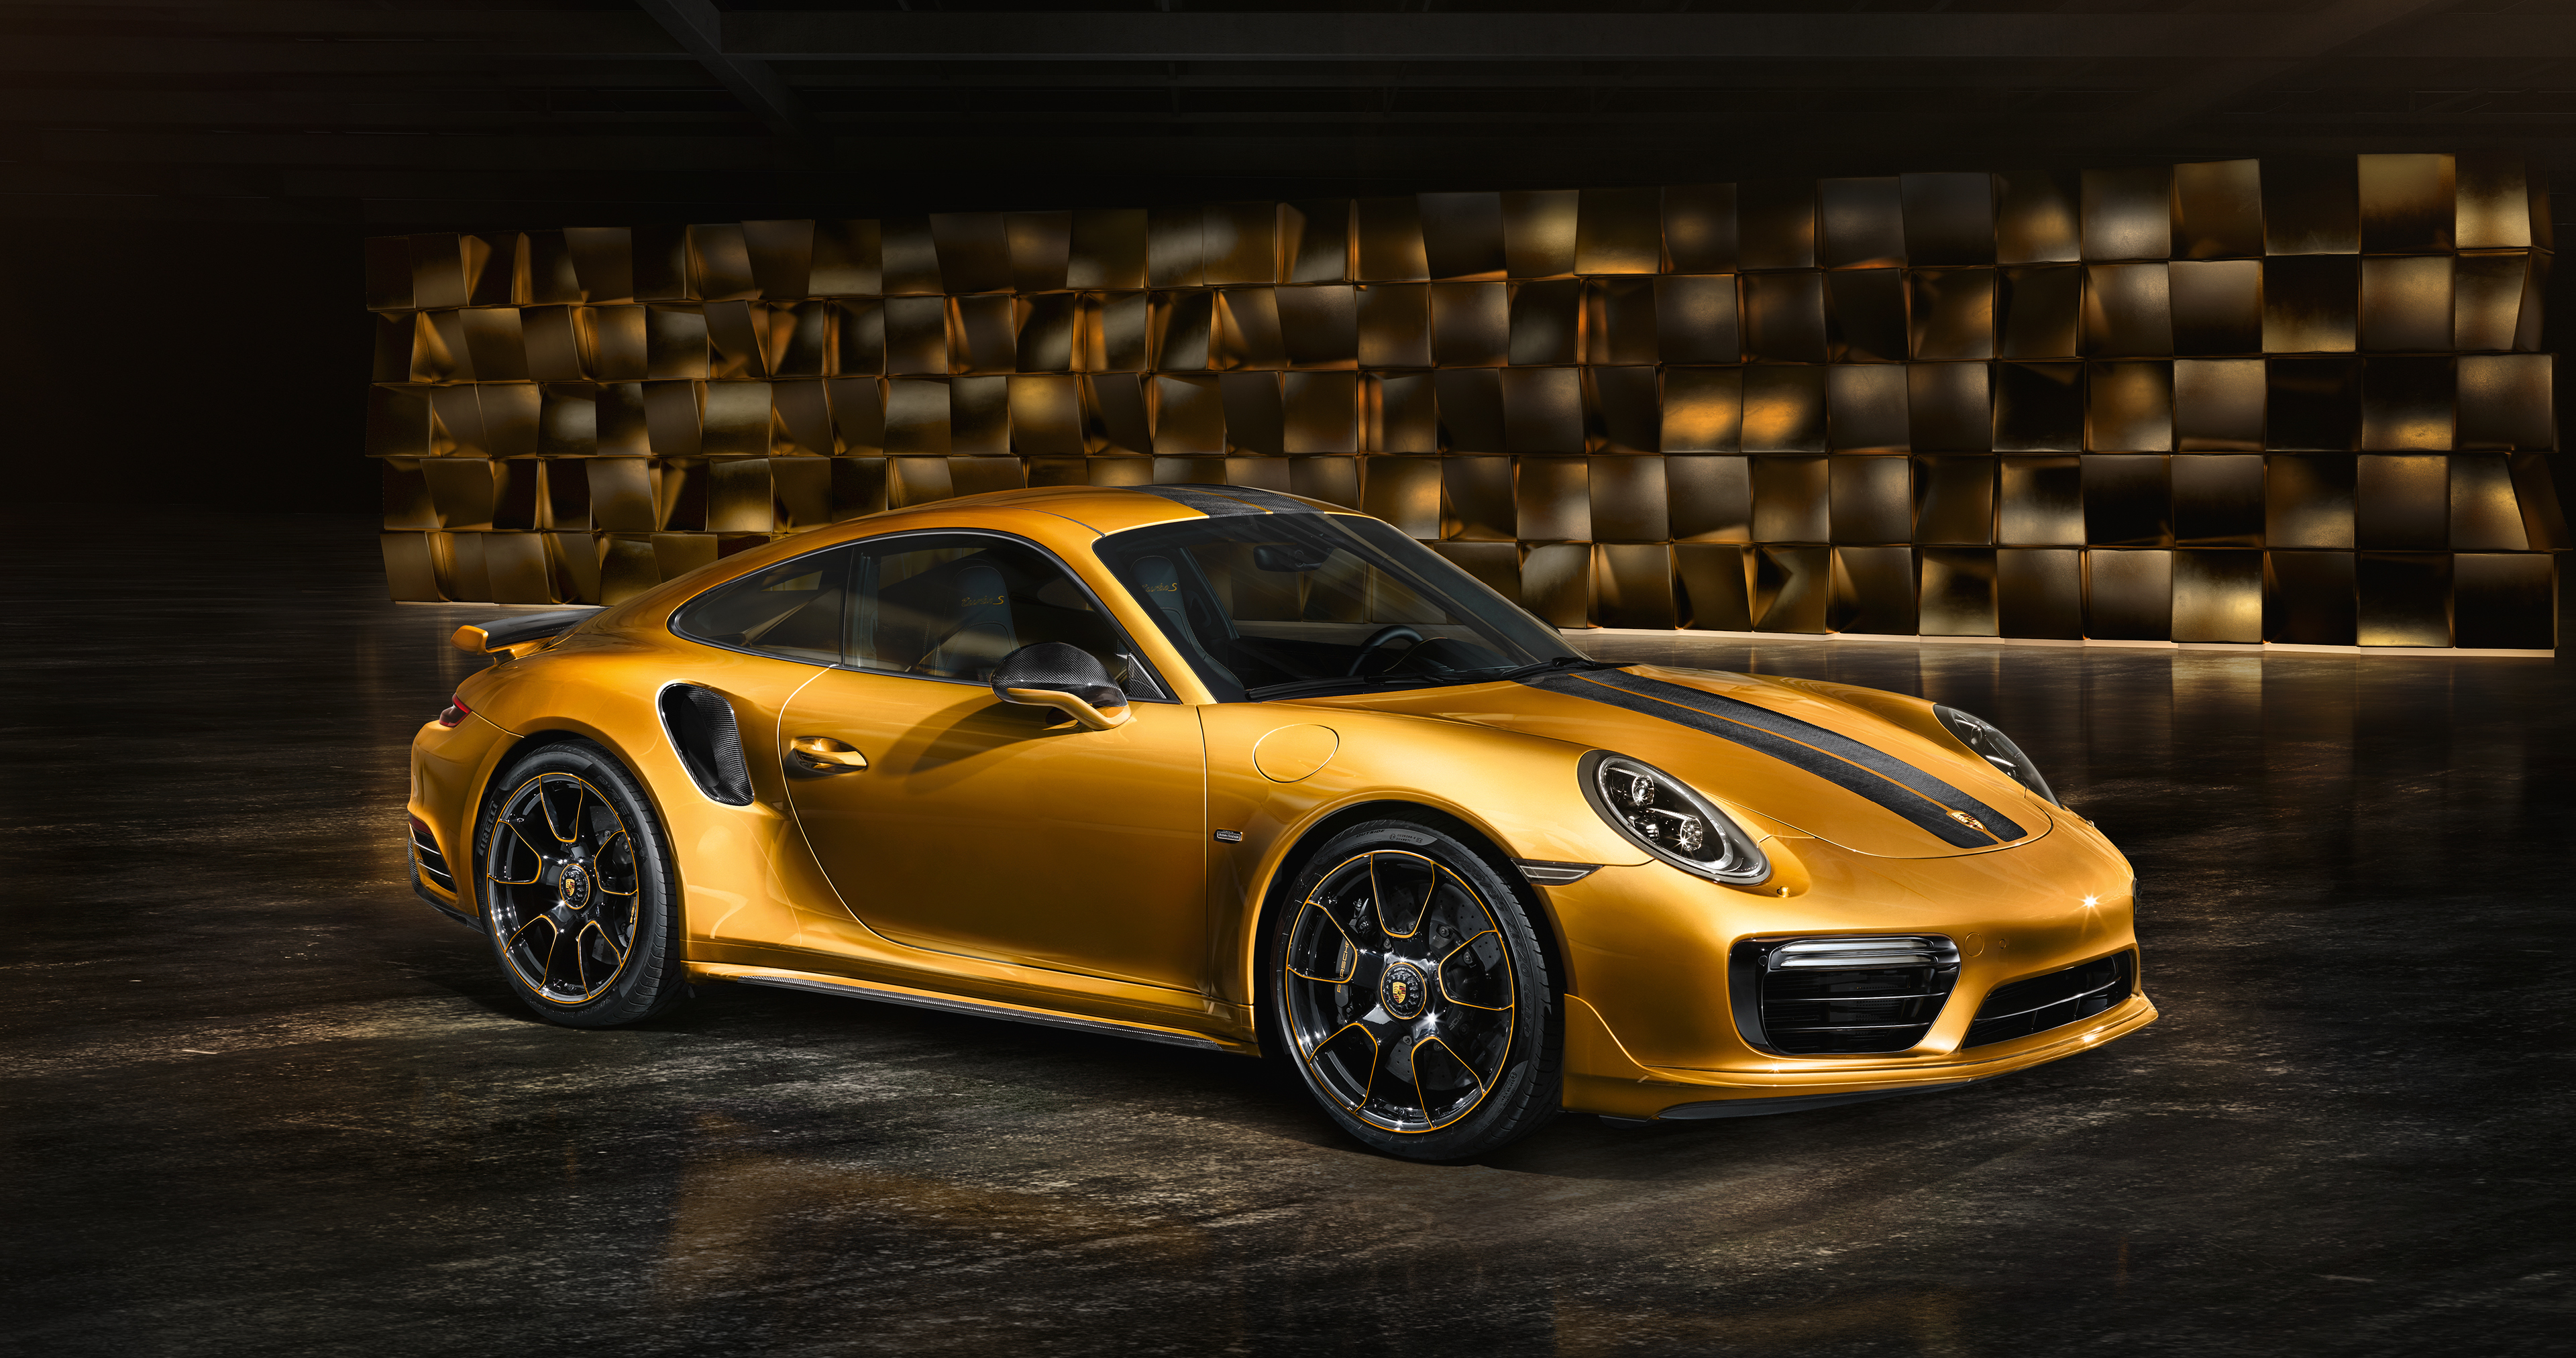 Порше зверобой. Porsche 911 Turbo s Gold. Porsche 911 Turbo s золотой. Porsche 911 Turbo s Моргенштерн. Porsche 911 Turbo s Exclusive.